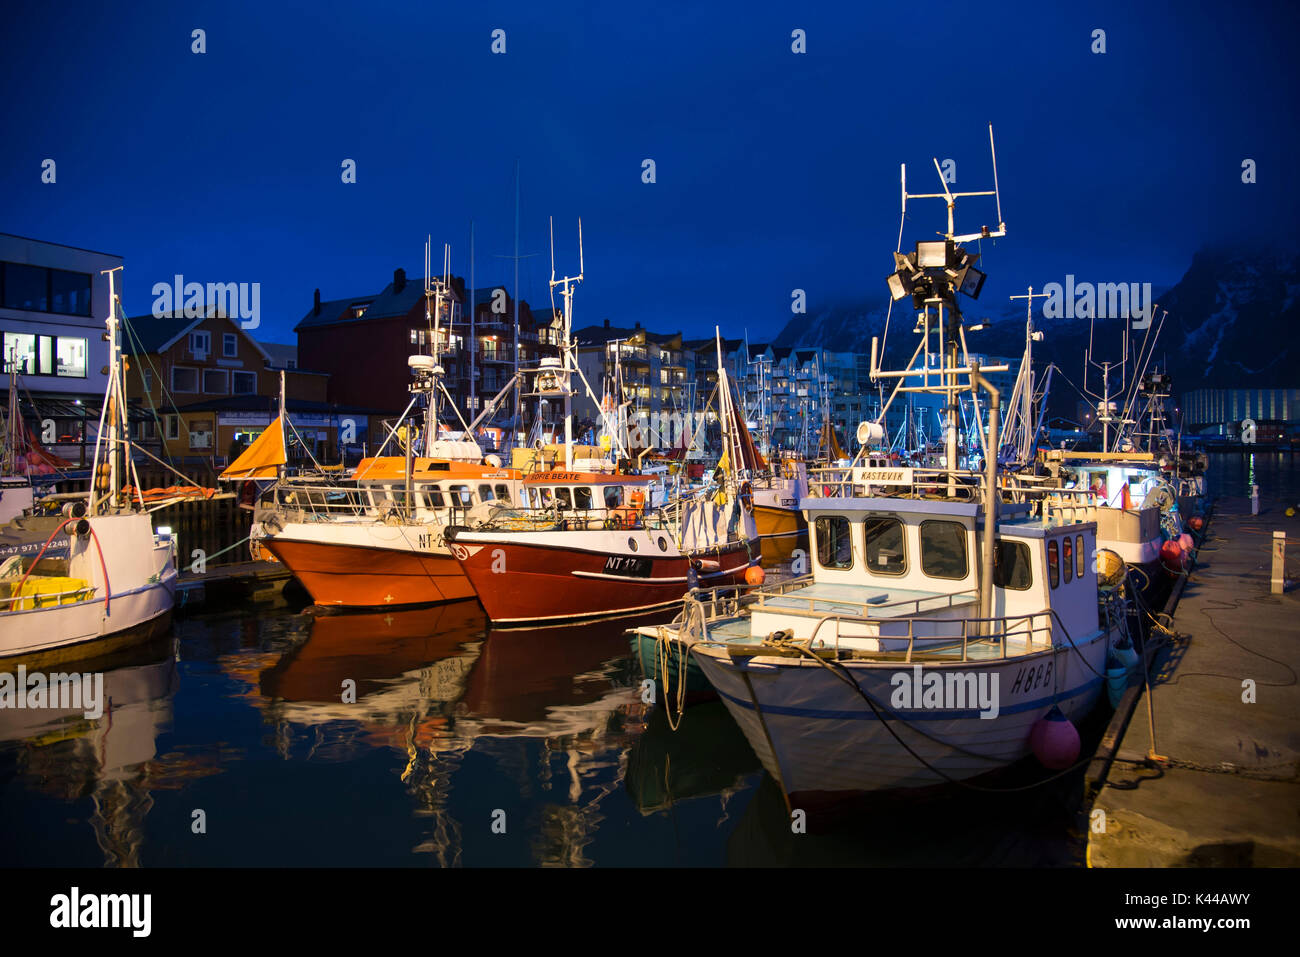 Anzeigen von Svolvaer Hafen bei Nacht. Eines der größeren Länder der Lofoten in Norwegen. Stockfoto